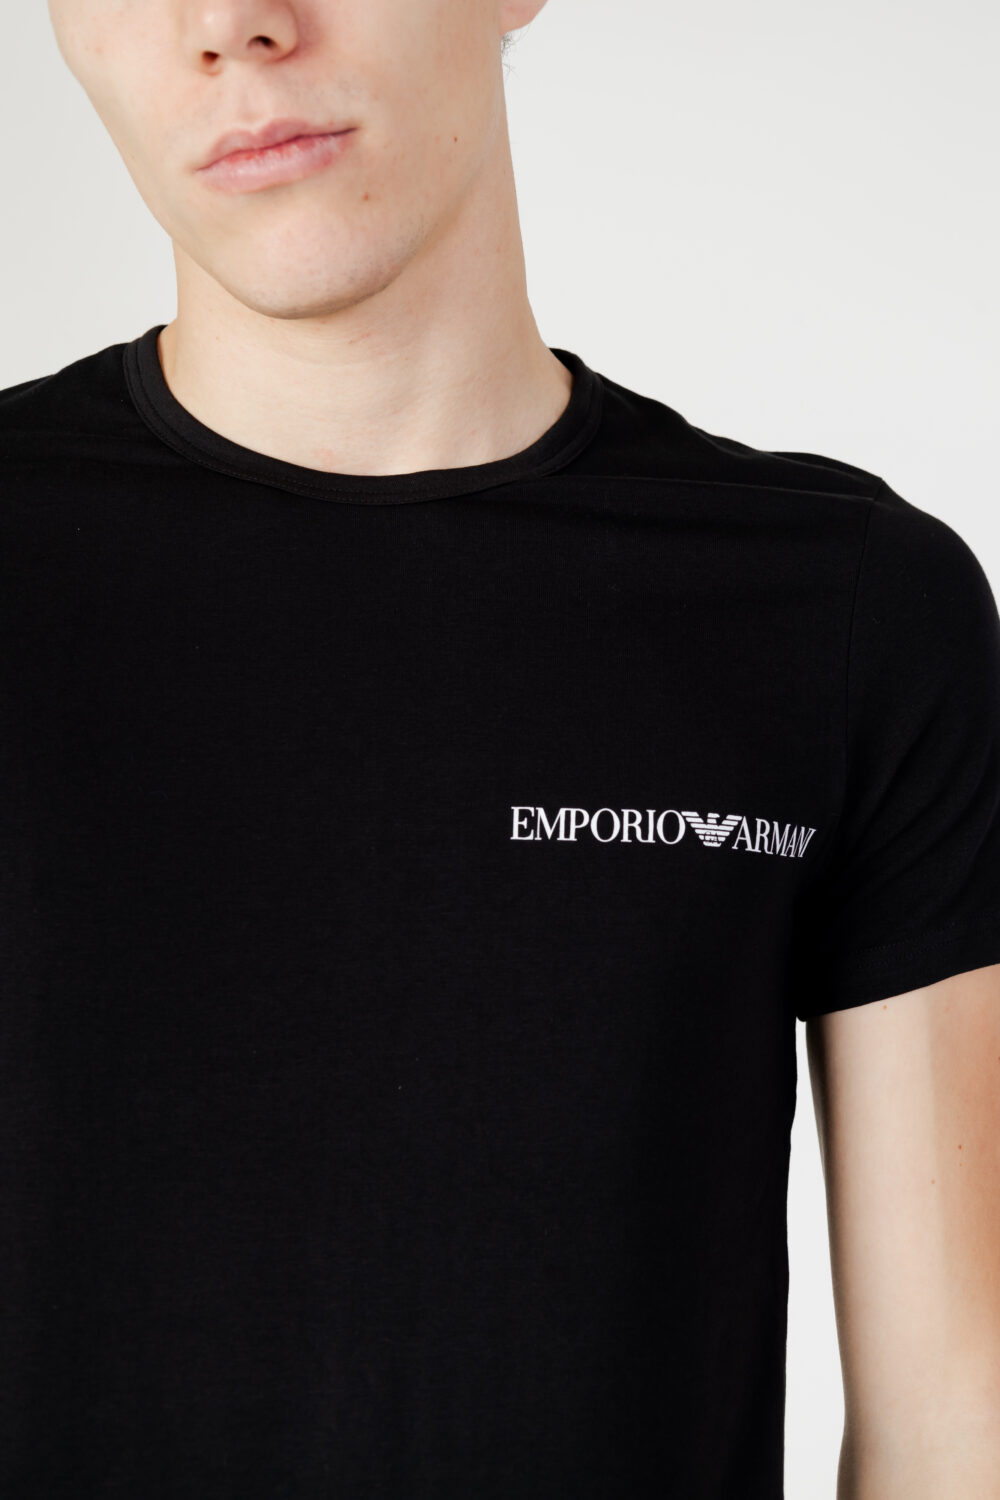 T-shirt intimo Emporio Armani Underwear 2pack crew neck s/s Nero - Foto 3